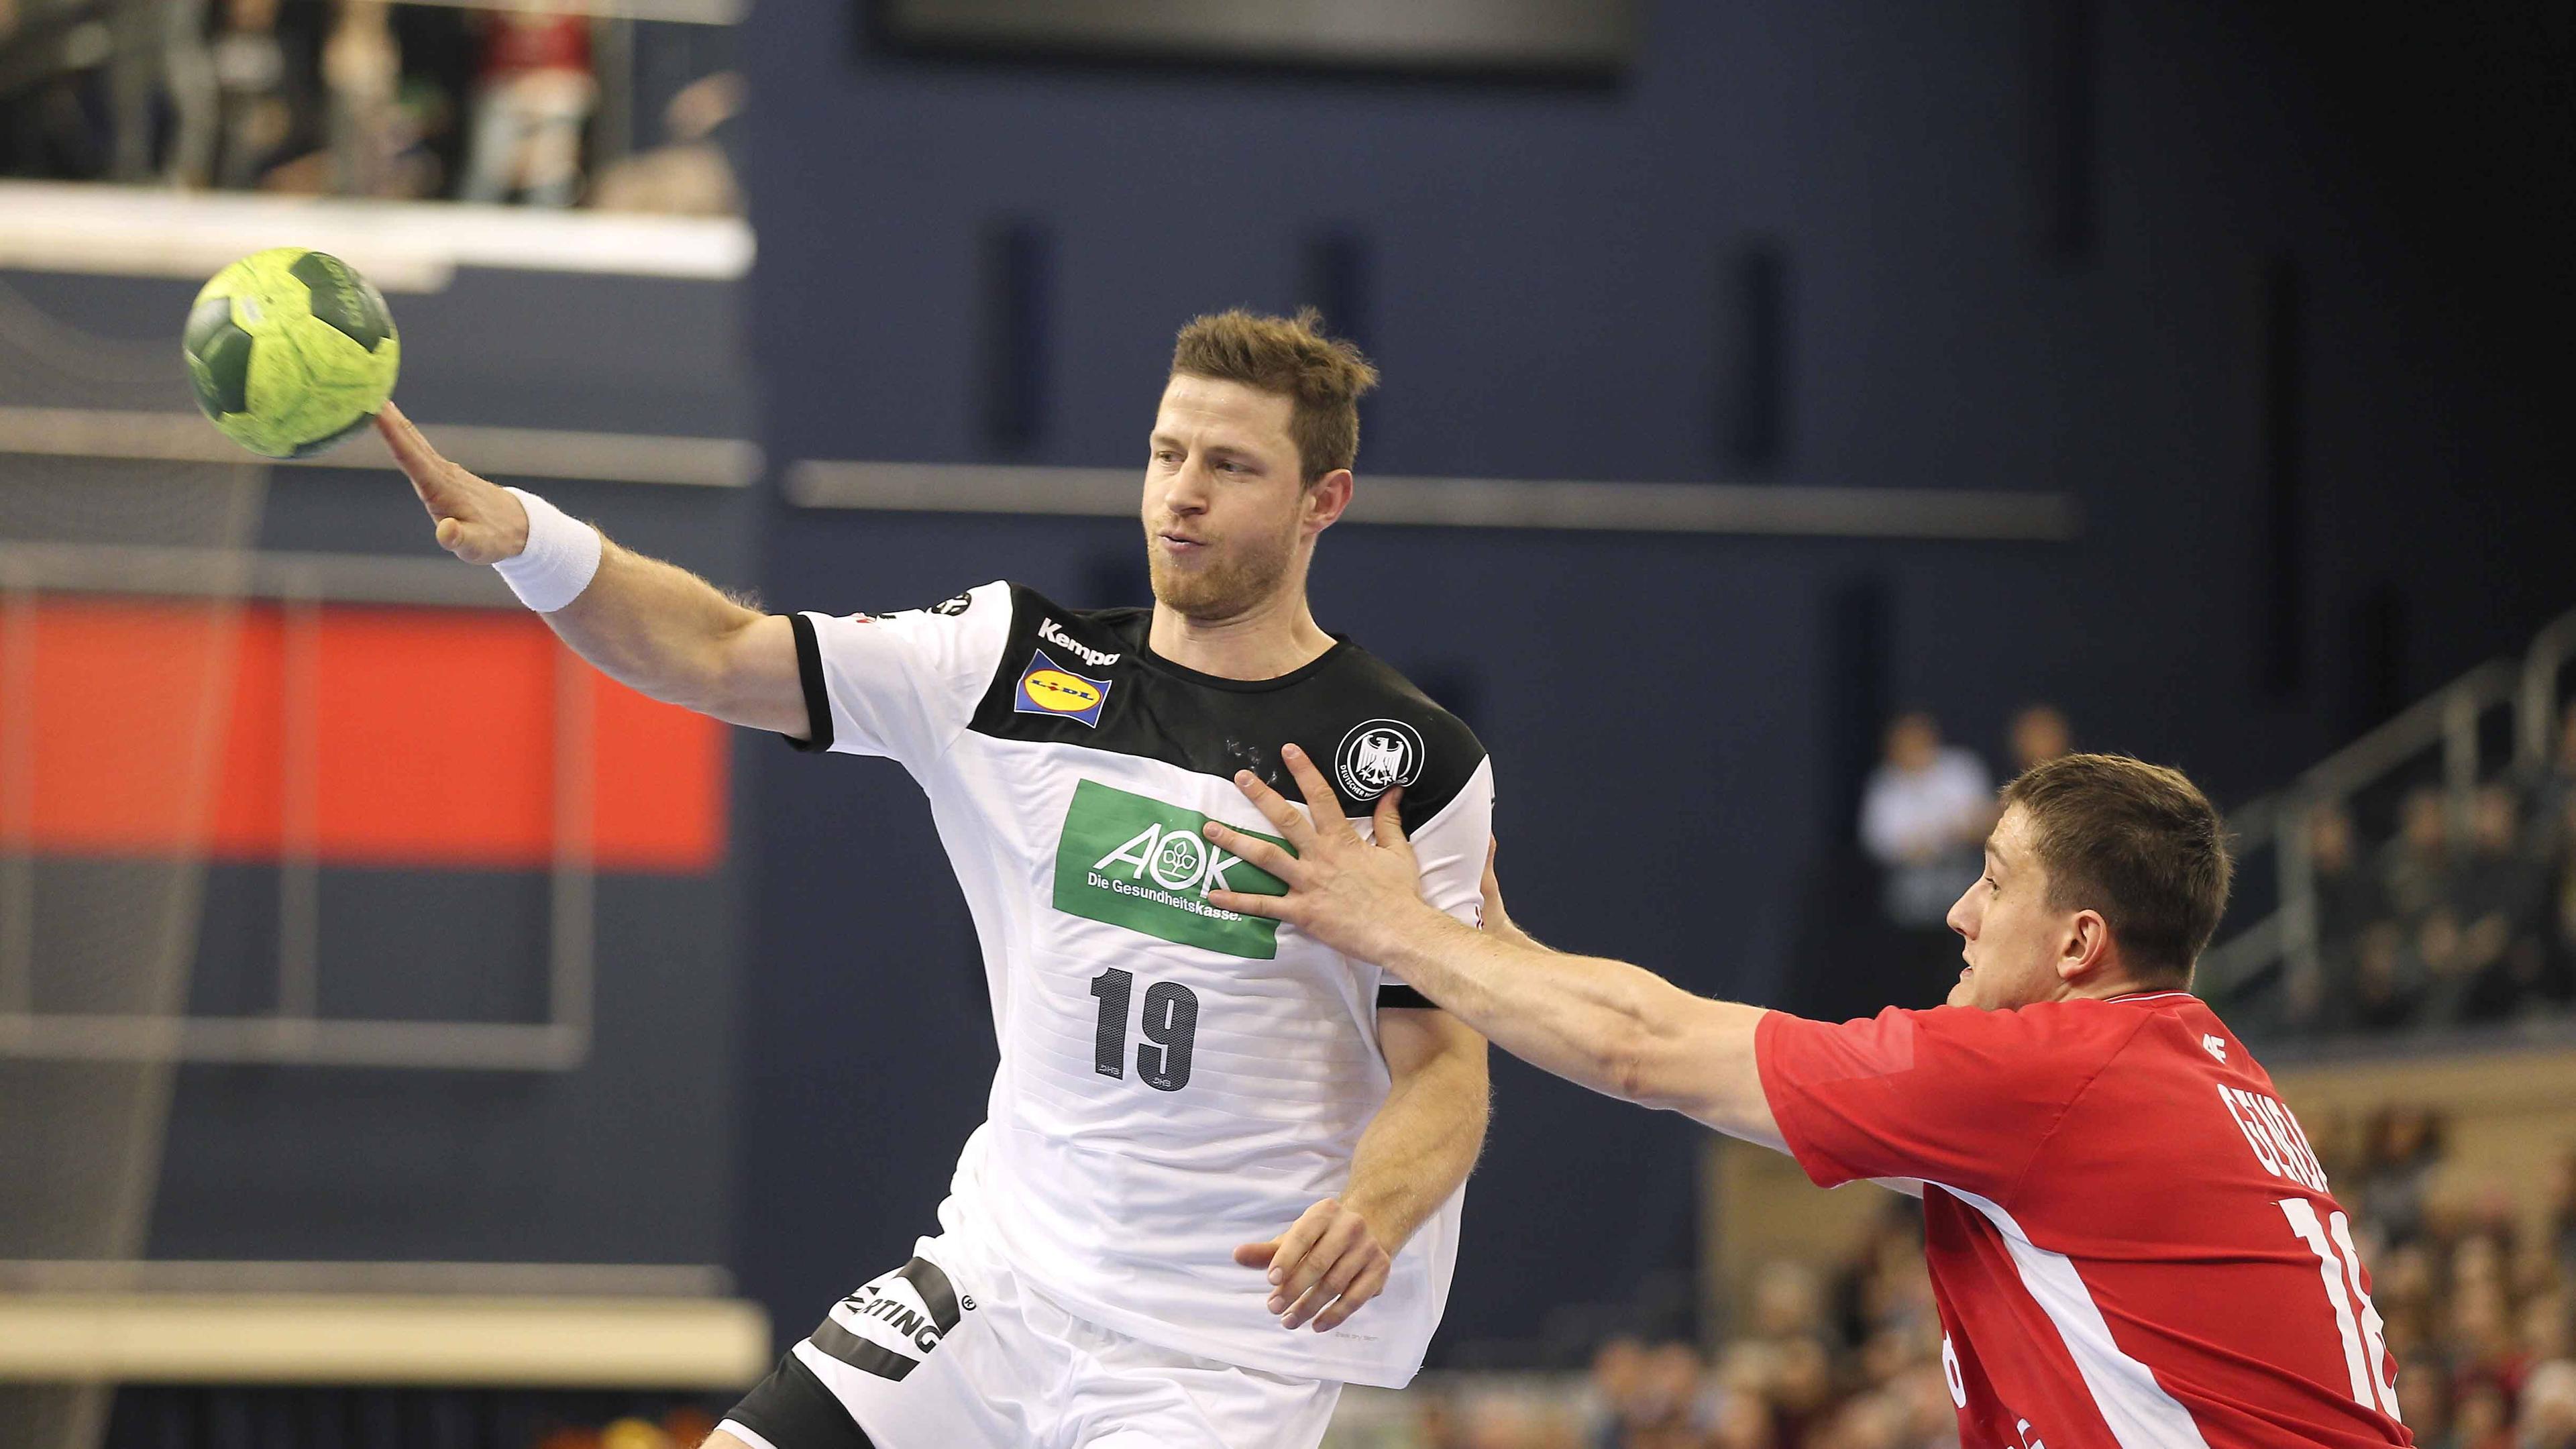 Handball Landerspiel Dhb Team Schlagt Polen Klar Zdfmediathek